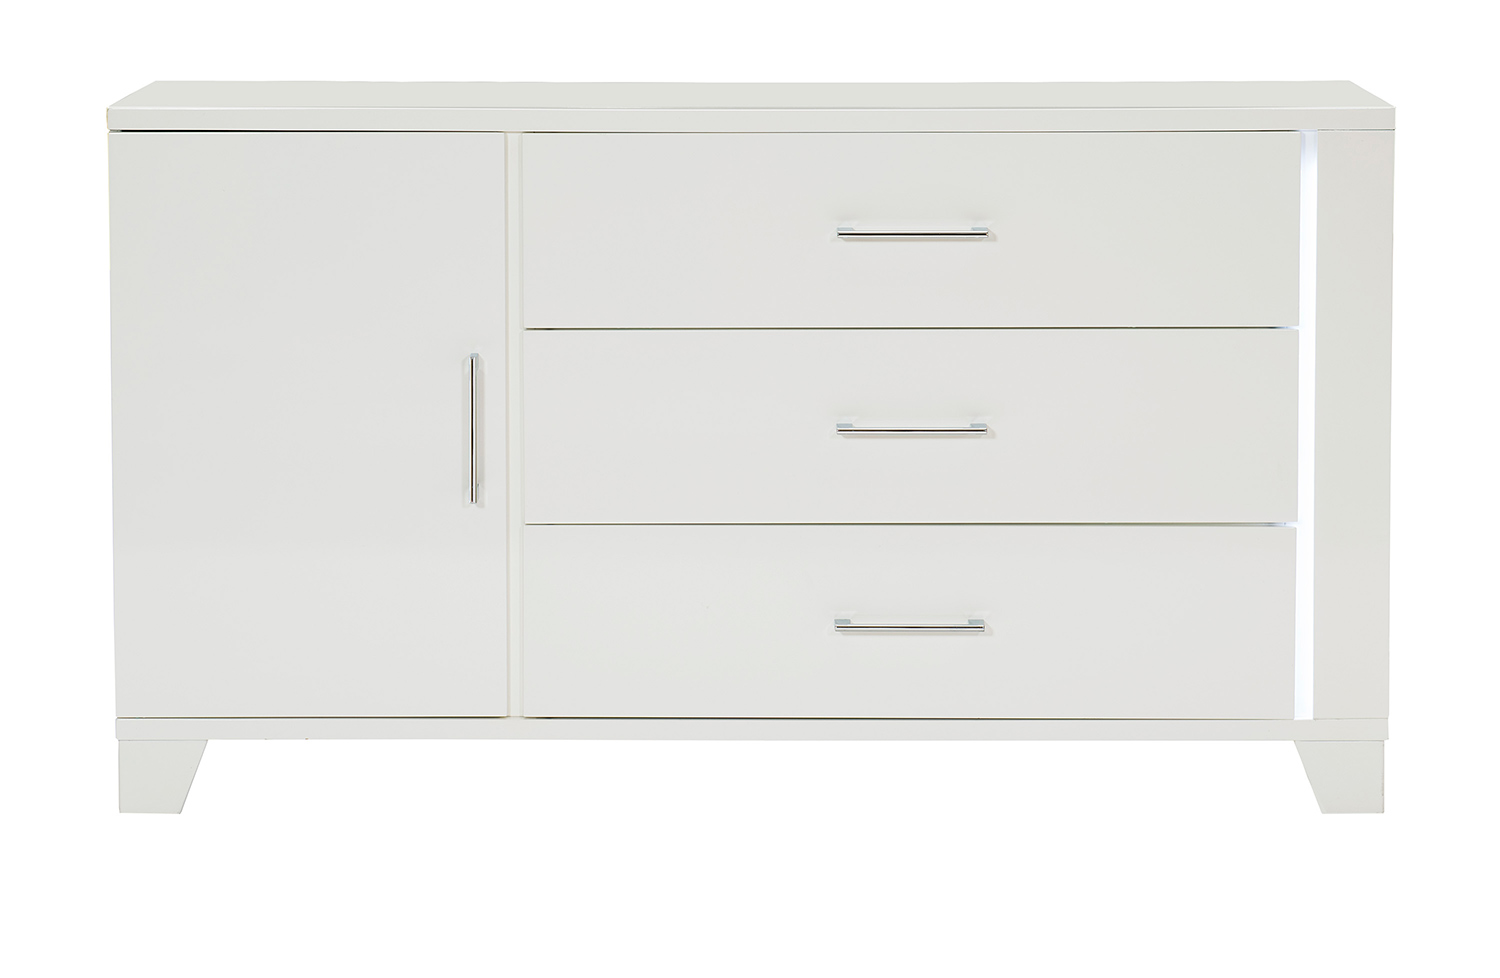 Homelegance Kerren or Keren Dresser with LED Lighting - White High Gloss